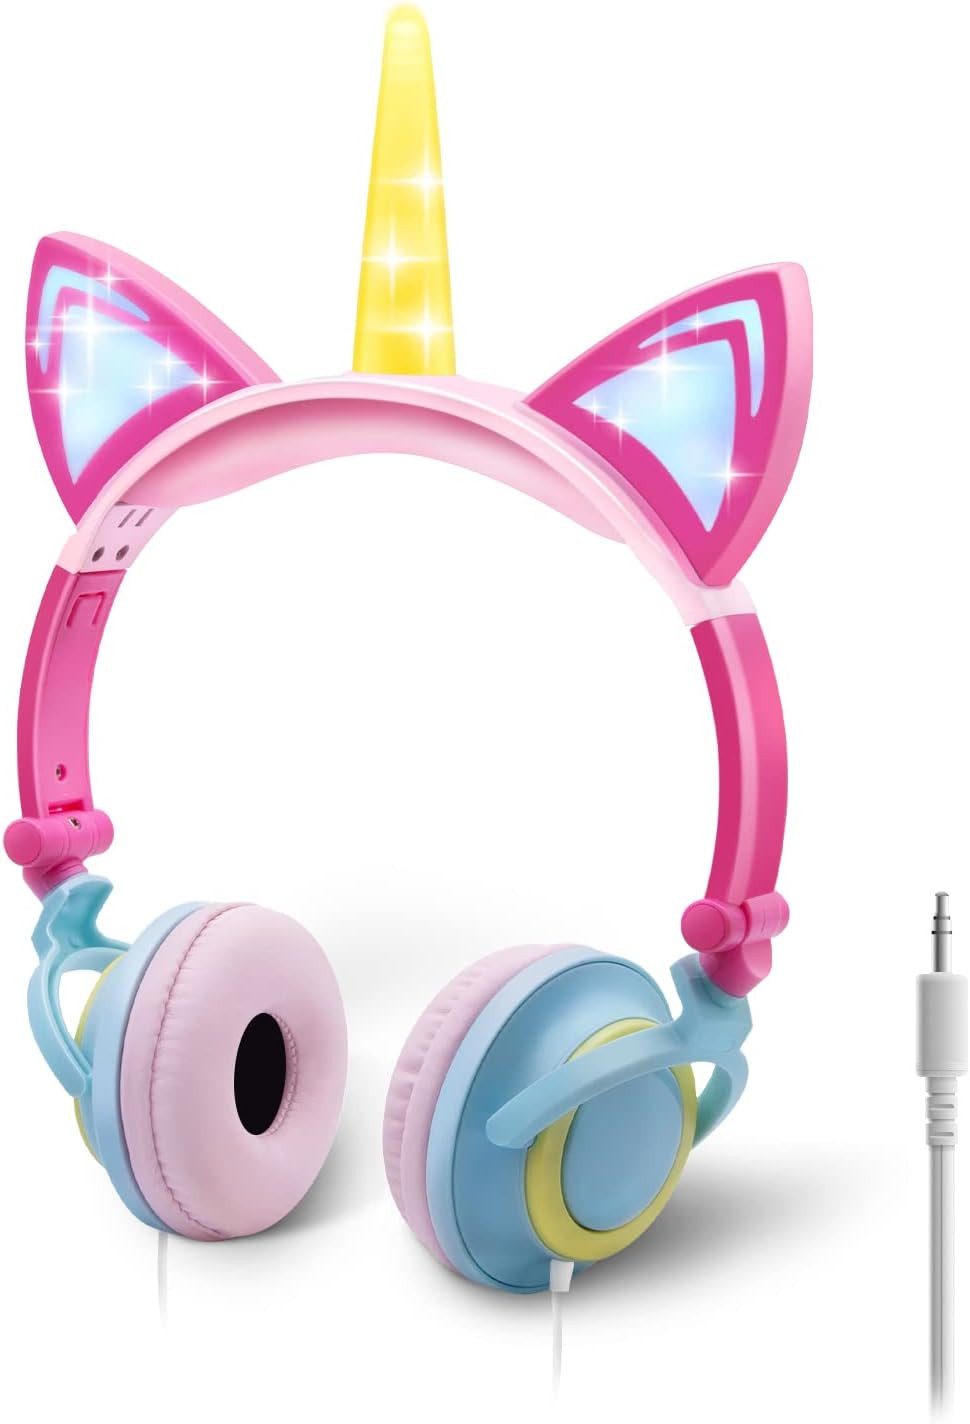 ONTA Einhornhorn, An- und Ausschalter Kinder-Kopfhörer (Das universelle 3,5 mm Audio-Kabel ermöglicht vielseitigen Einsatz, Verwendung umweltfreundlicher Materialien, Leuchtenden LED-Katzenohren,Größenverstellbare optimalen Kopfkomfort)